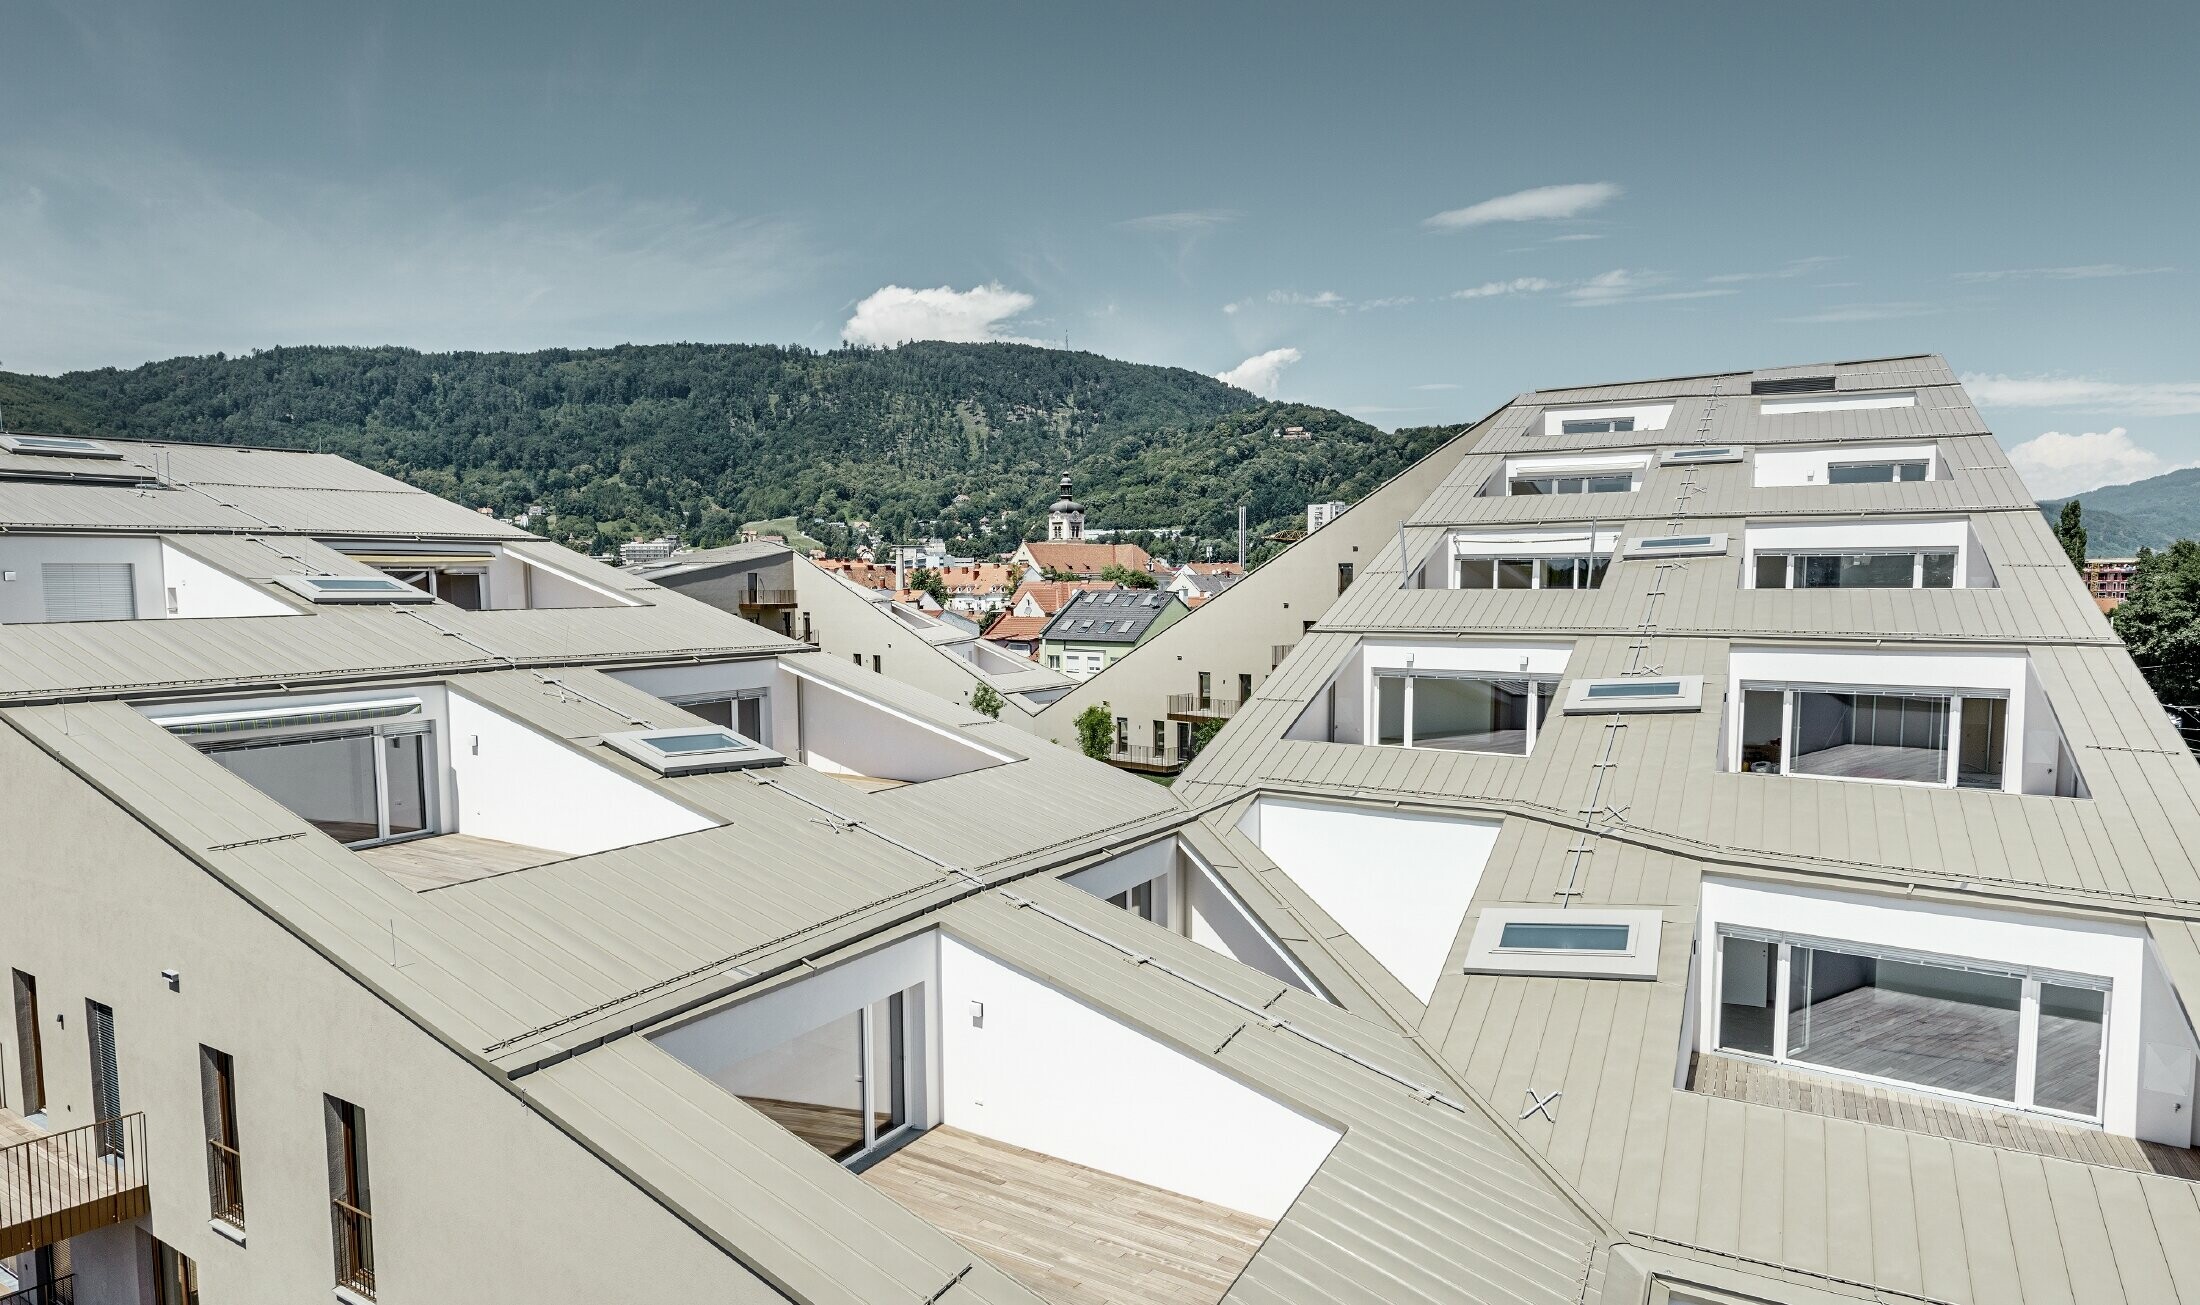 Langt boliganlæg i Graz med flade tagflader og integrerede terrasser og udstrakte vinduer med et Prefalztag i specialfarven bronzemetallic